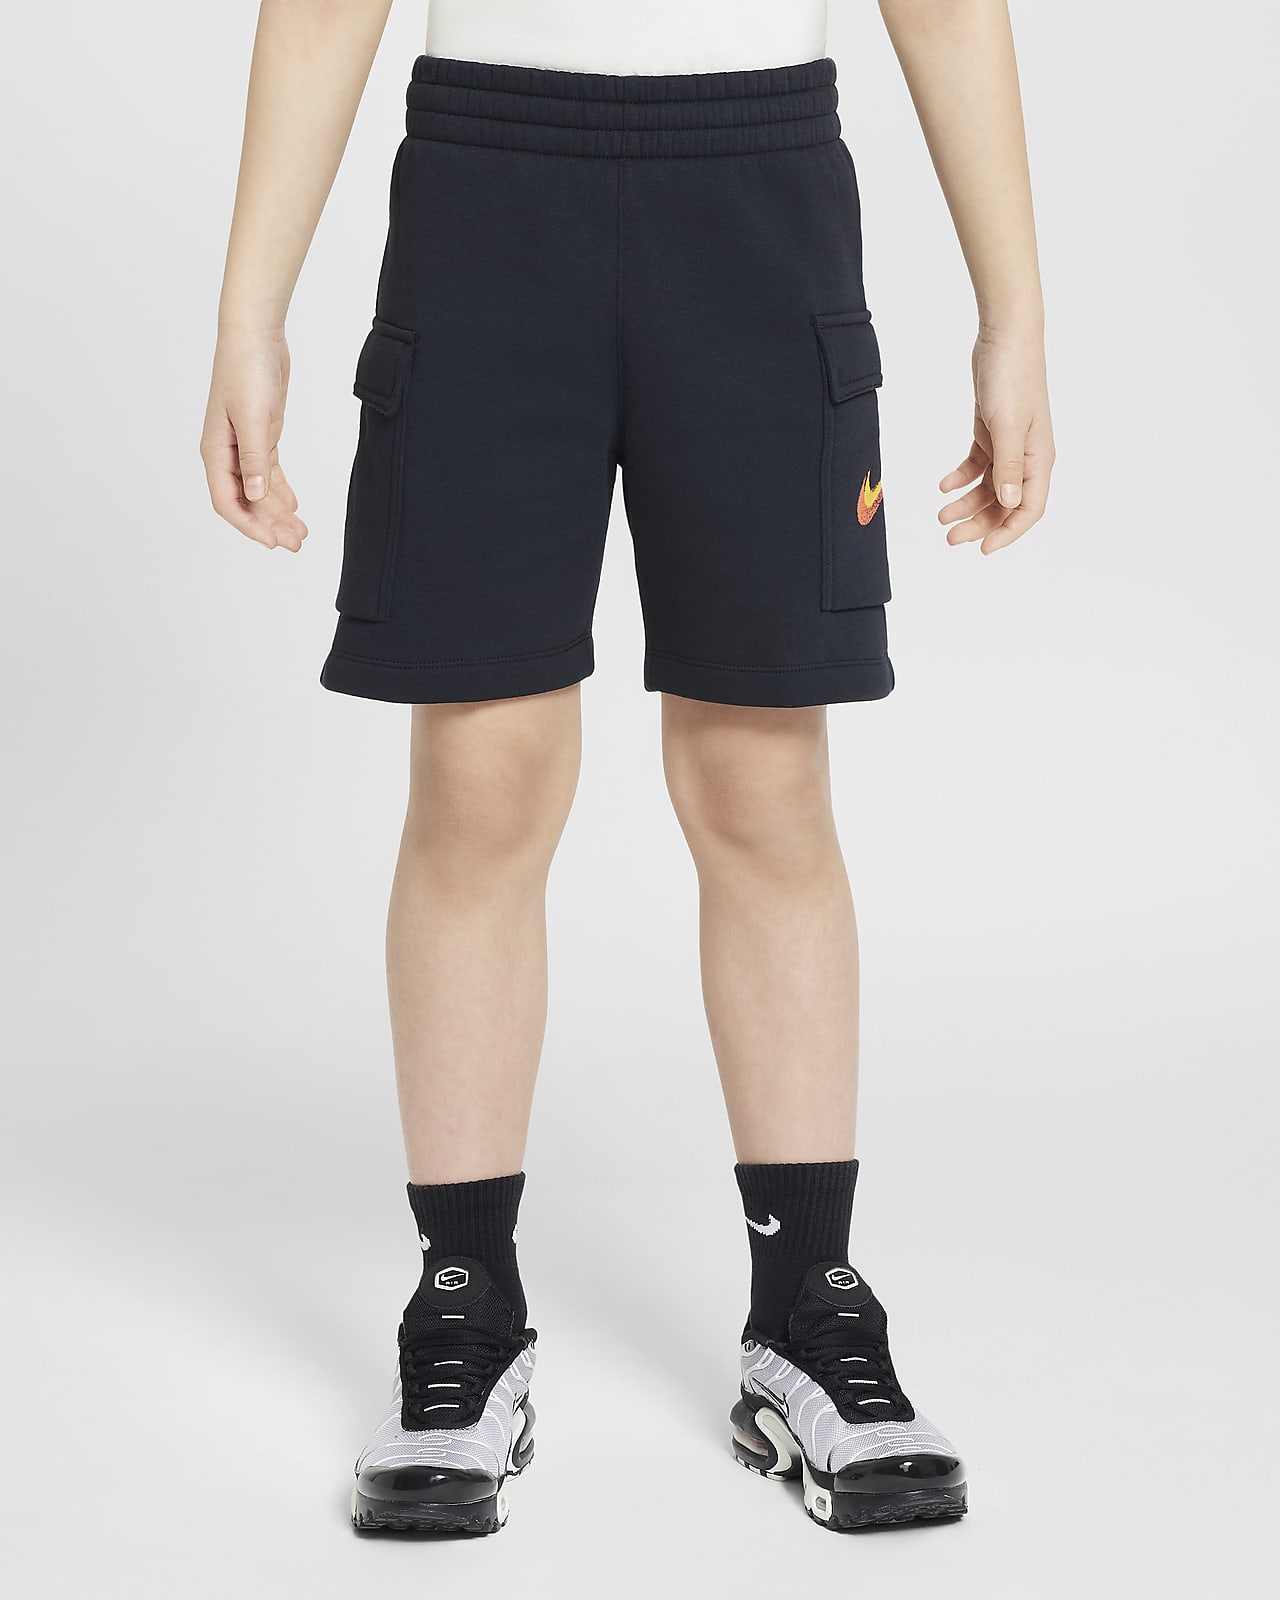 Calções de lã cardada Nike Sportswear Standard Issue Júnior (Rapaz)